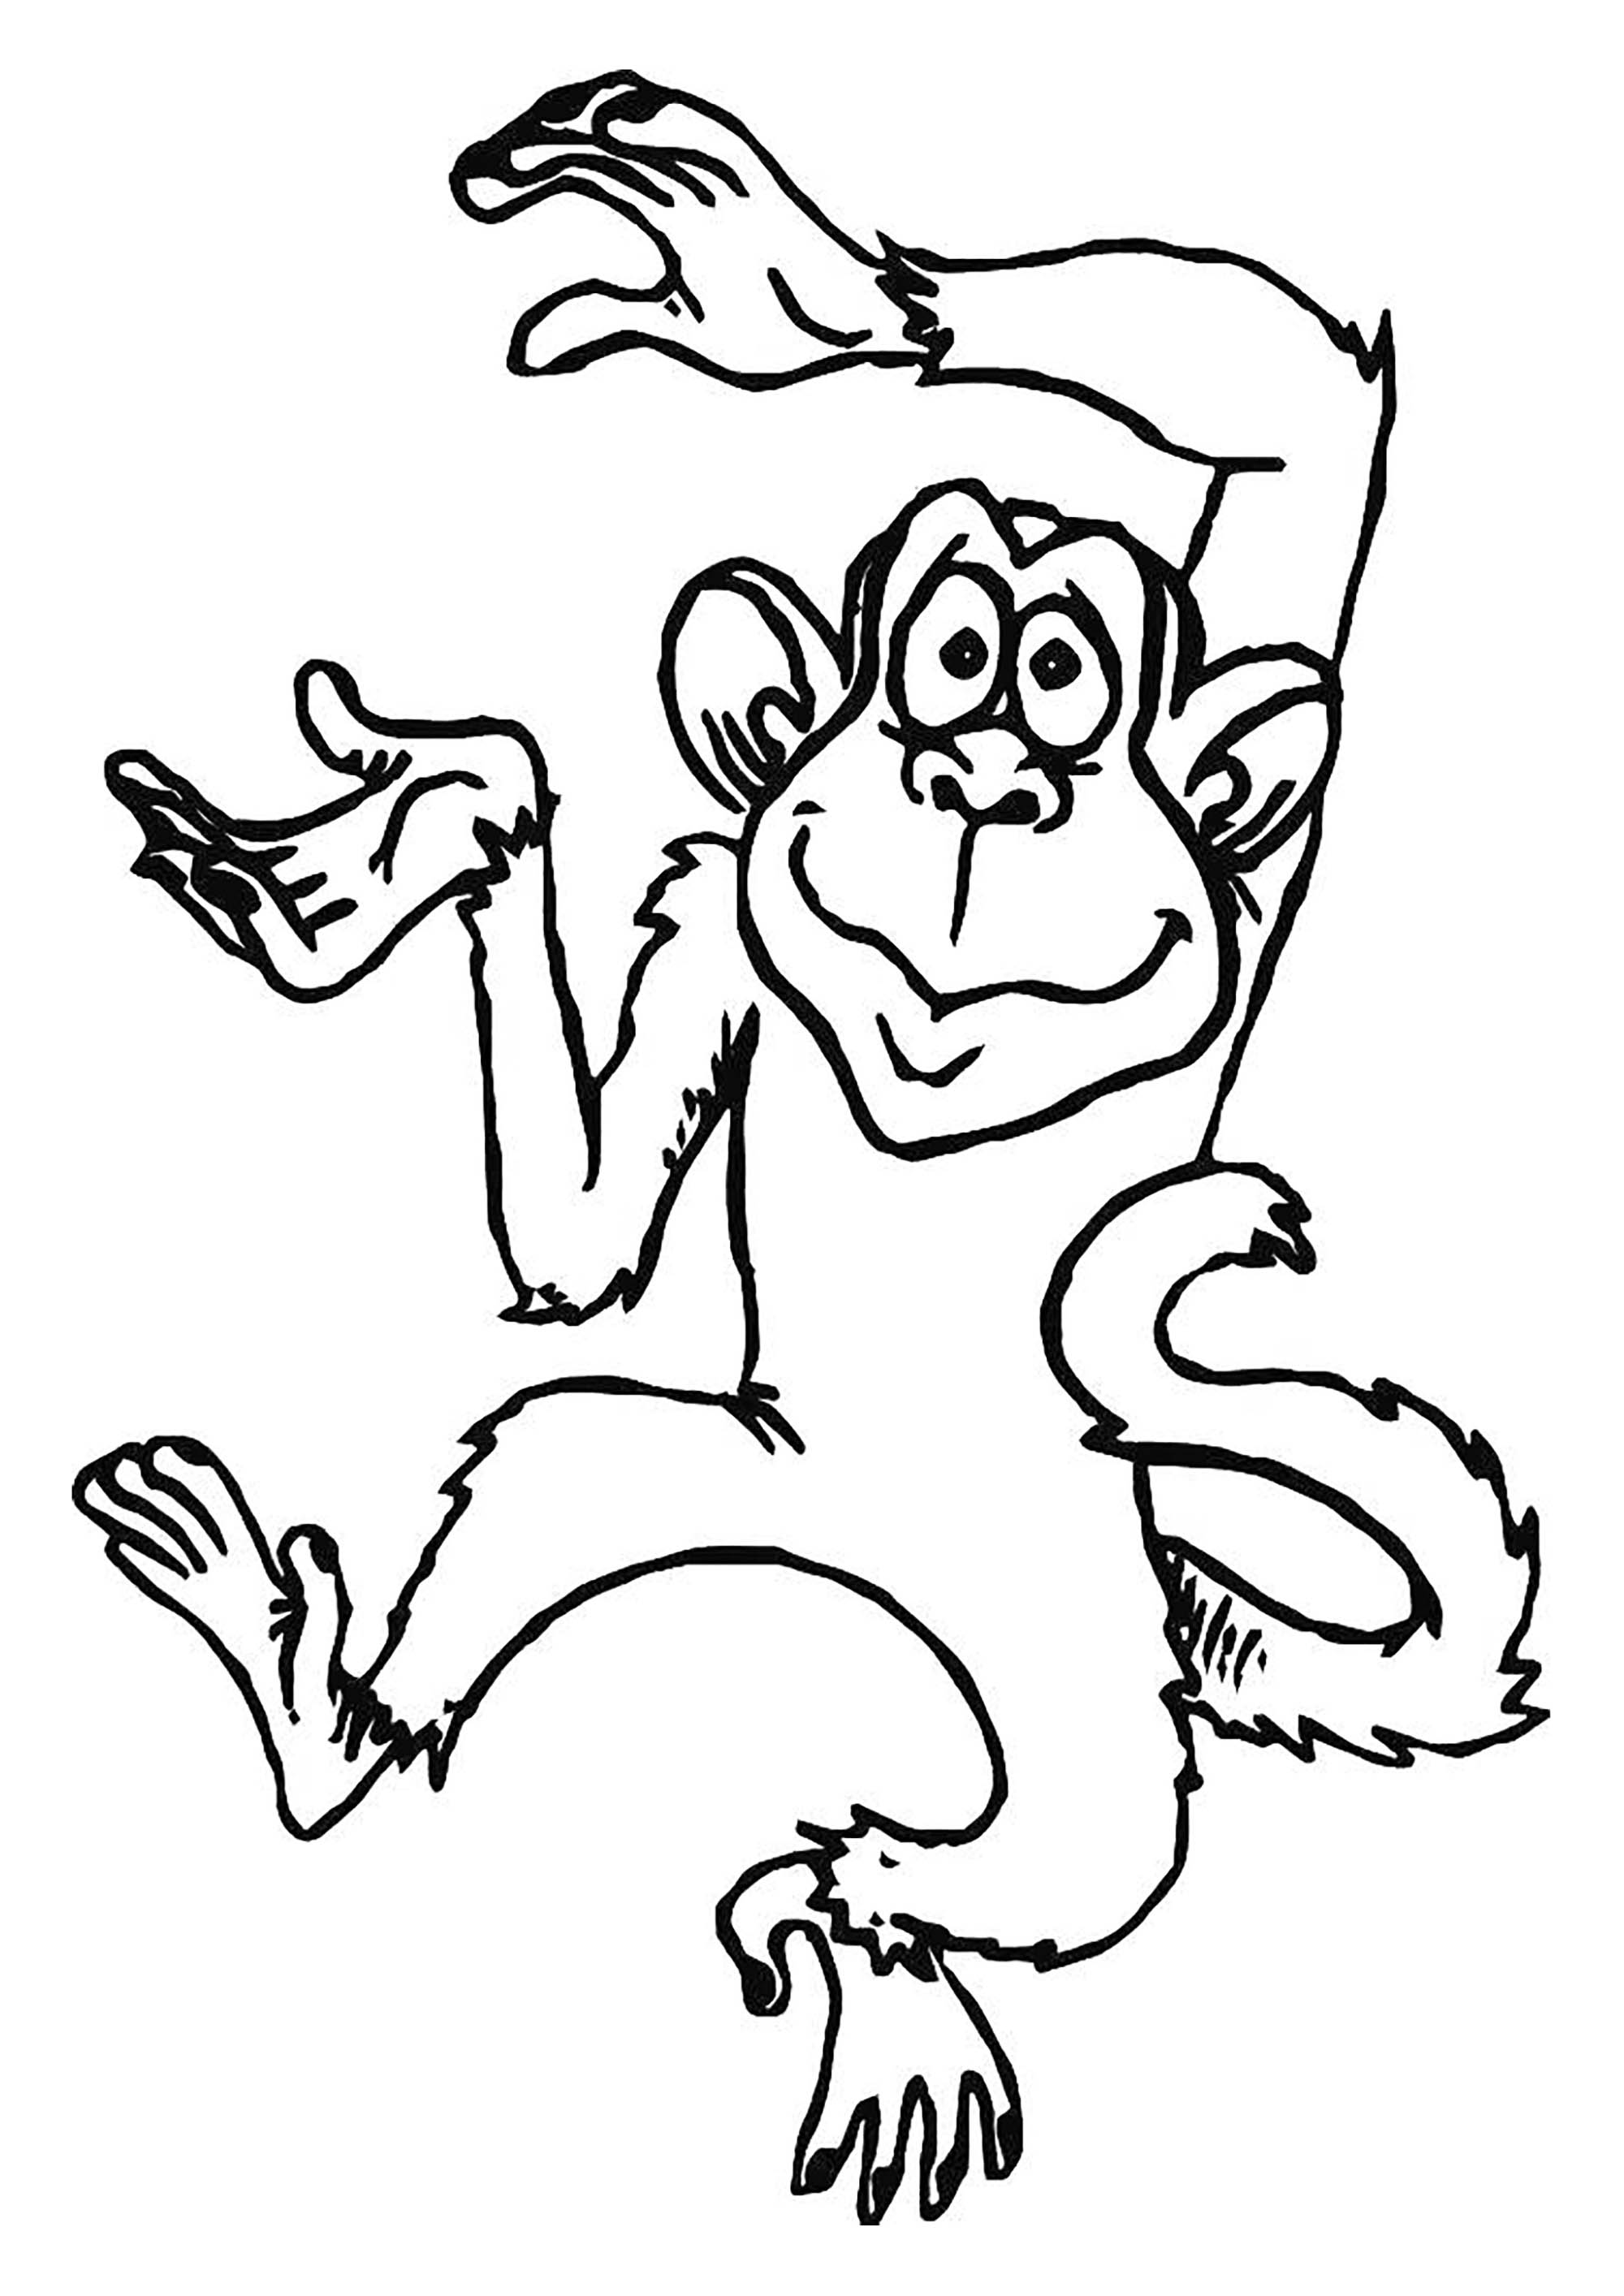 Image de singe à imprimer et à colorier